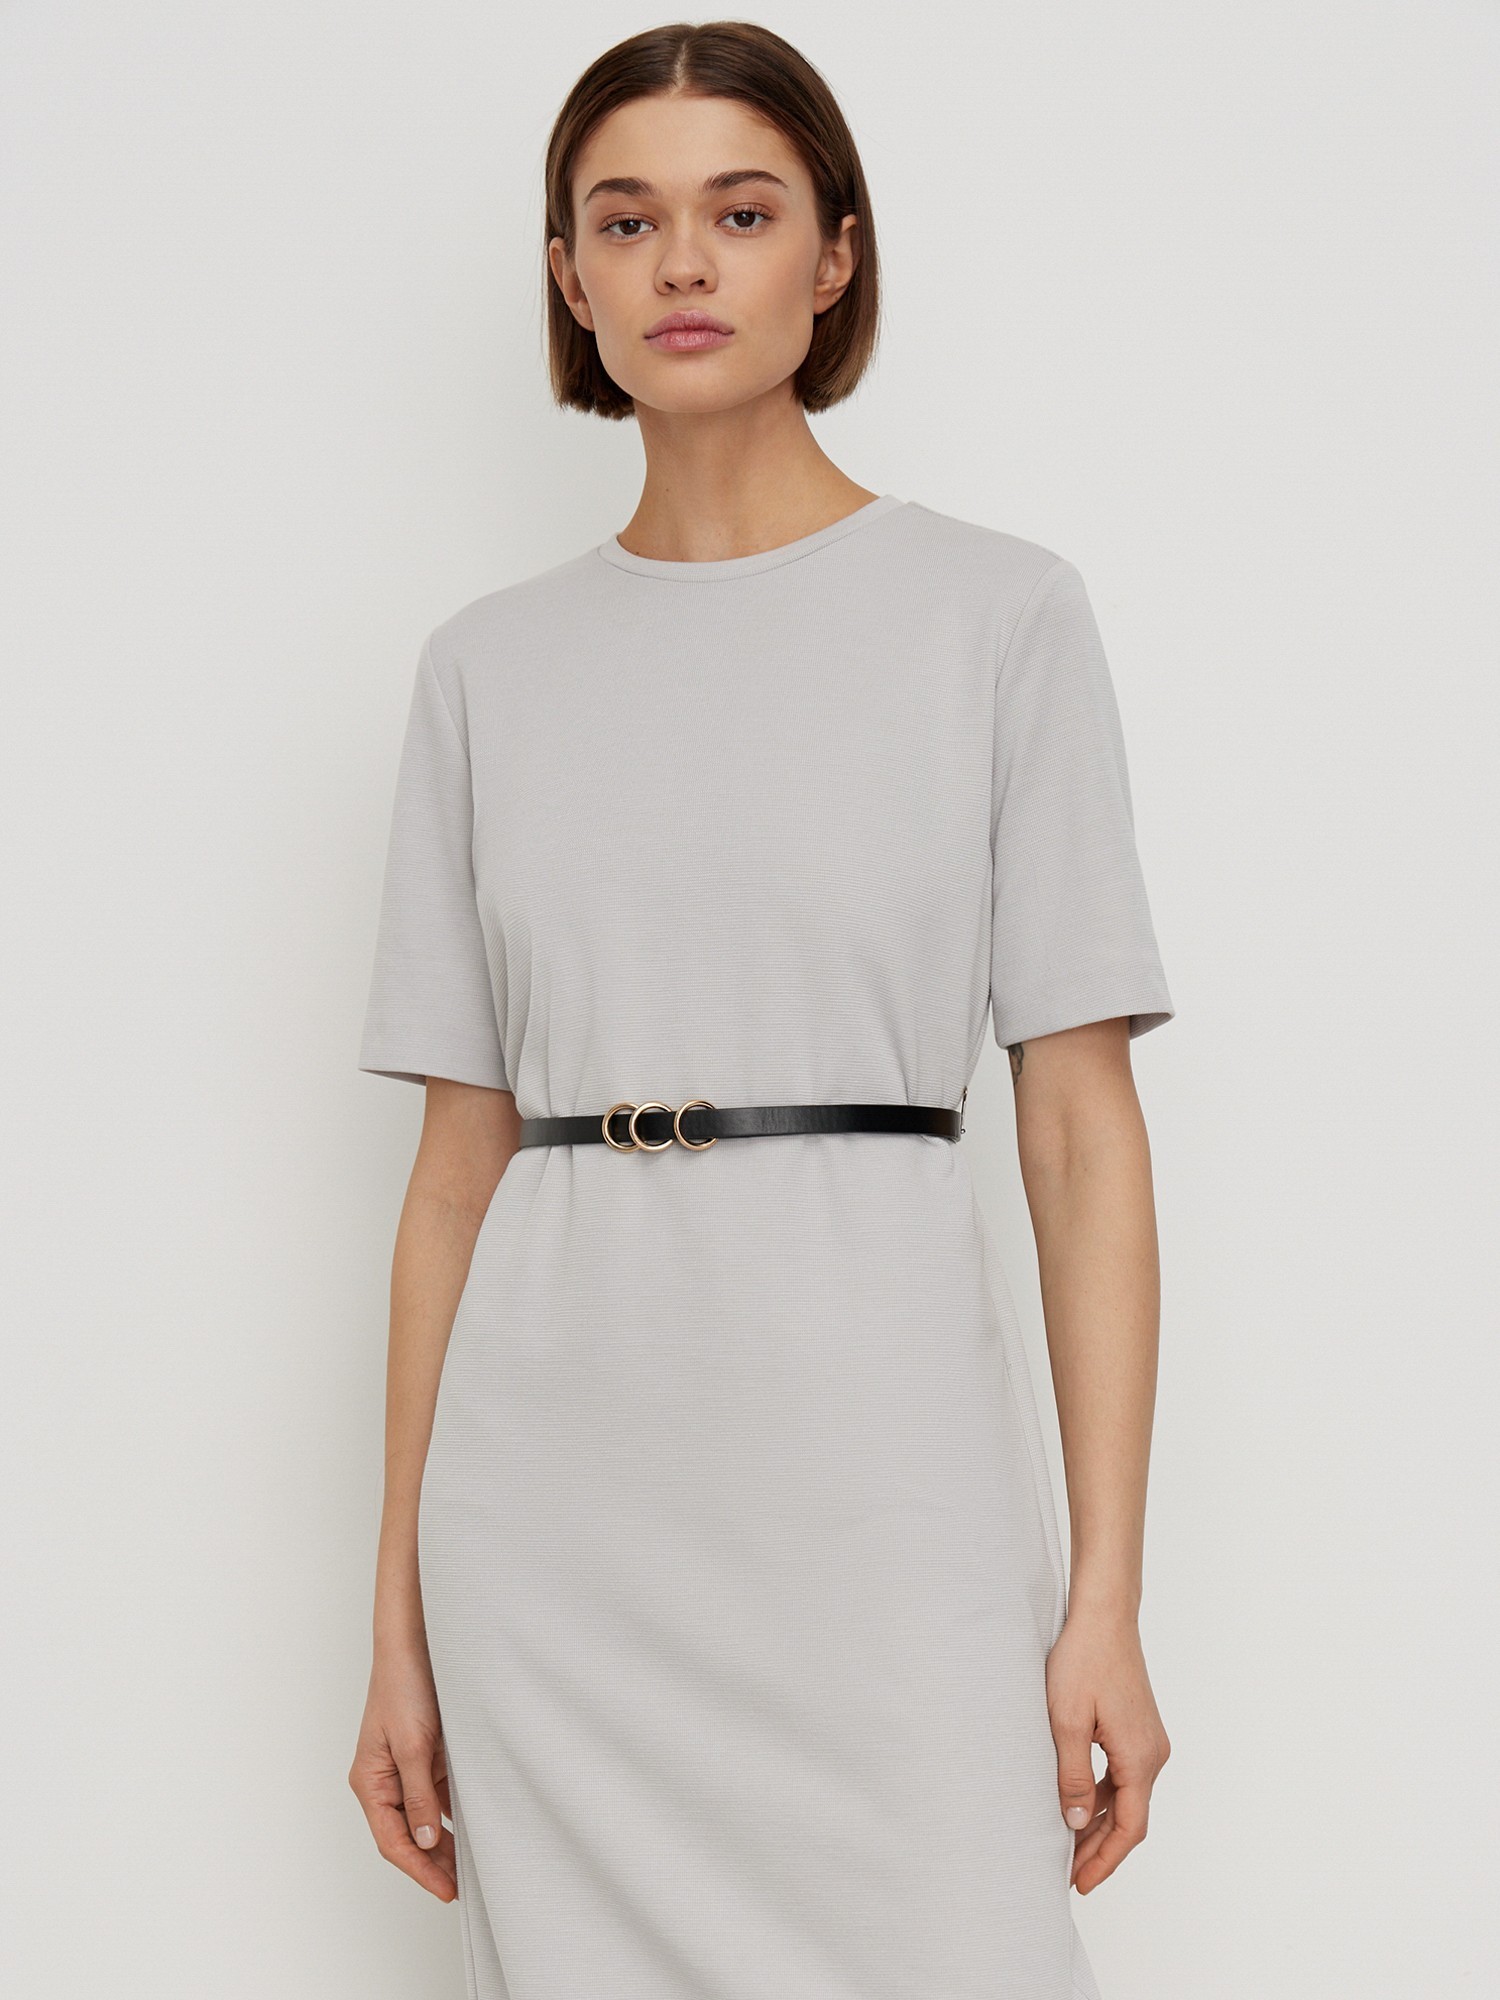 Платье с коротким рукавом трикотажное Elis DR0496K, цвет серый, размер 44 - фото 2